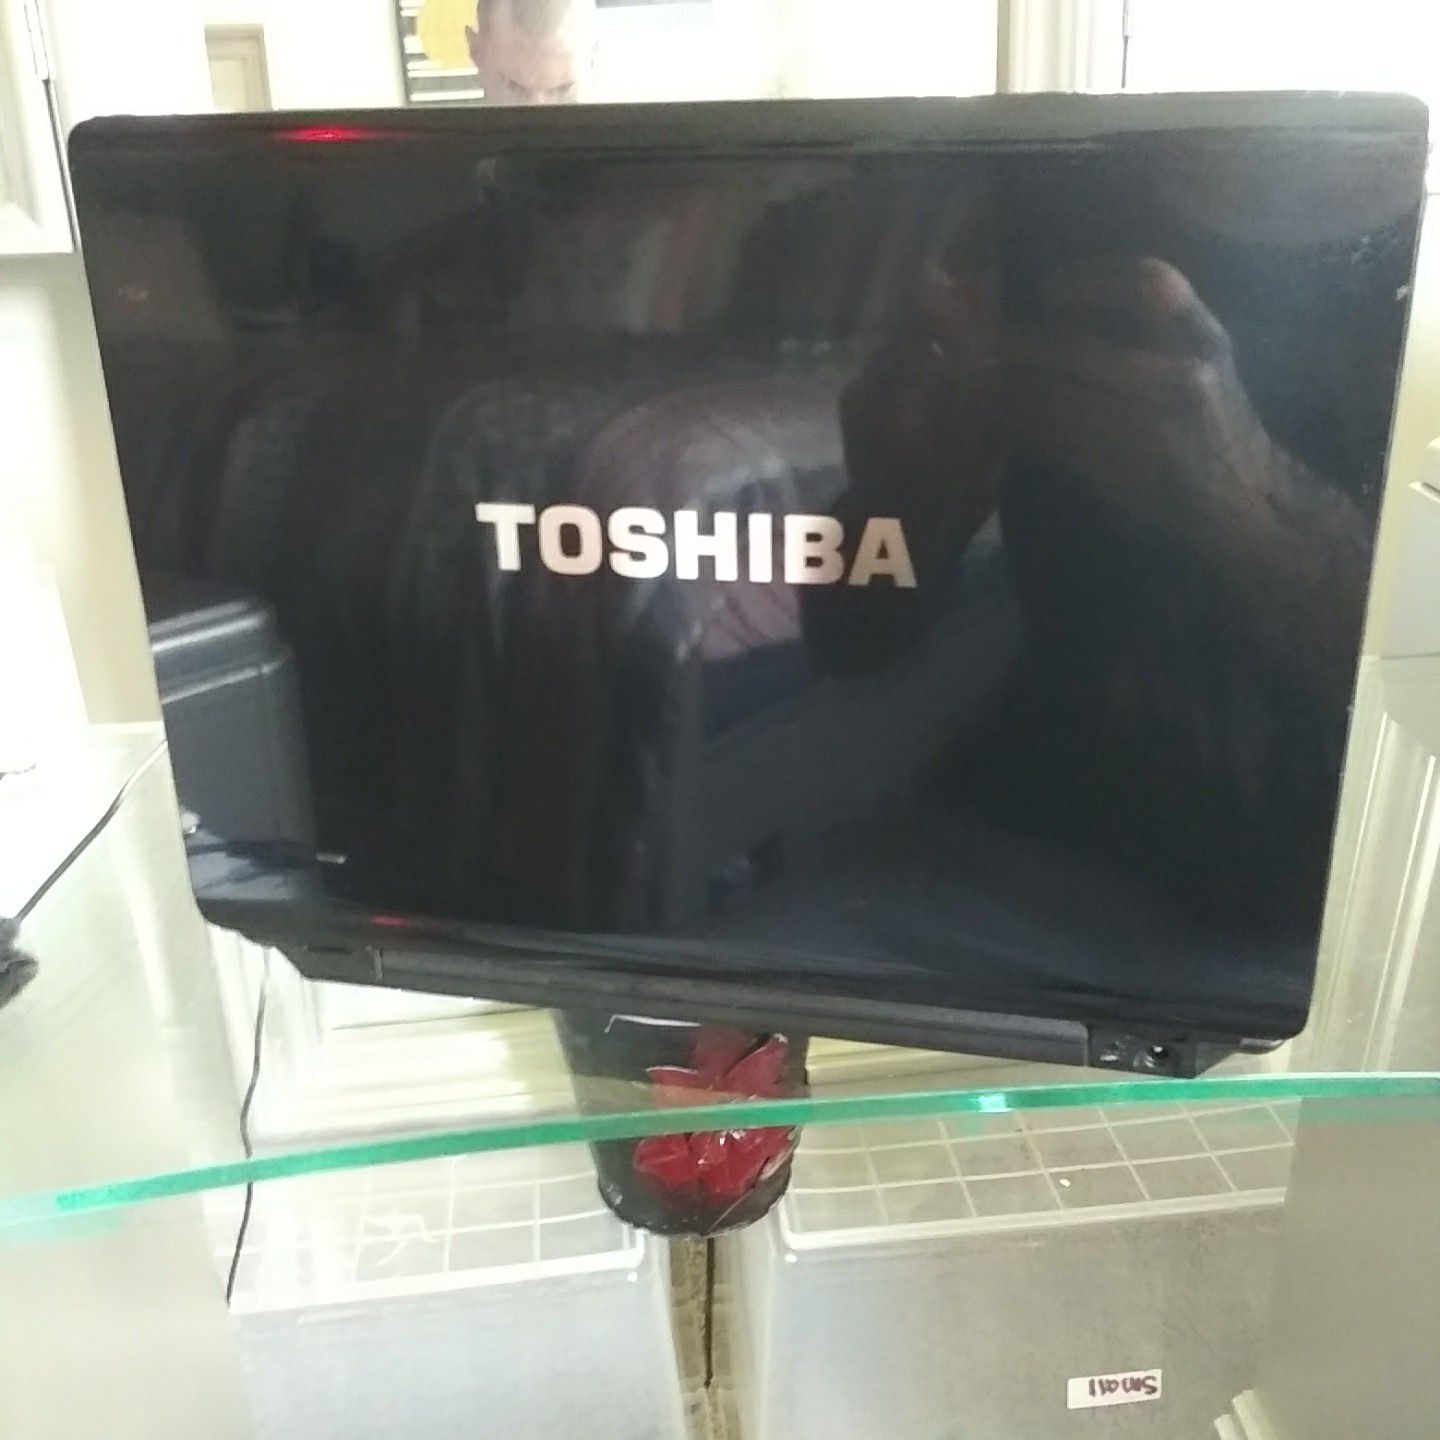 TOSHIBA SATELLITE LAPTOP